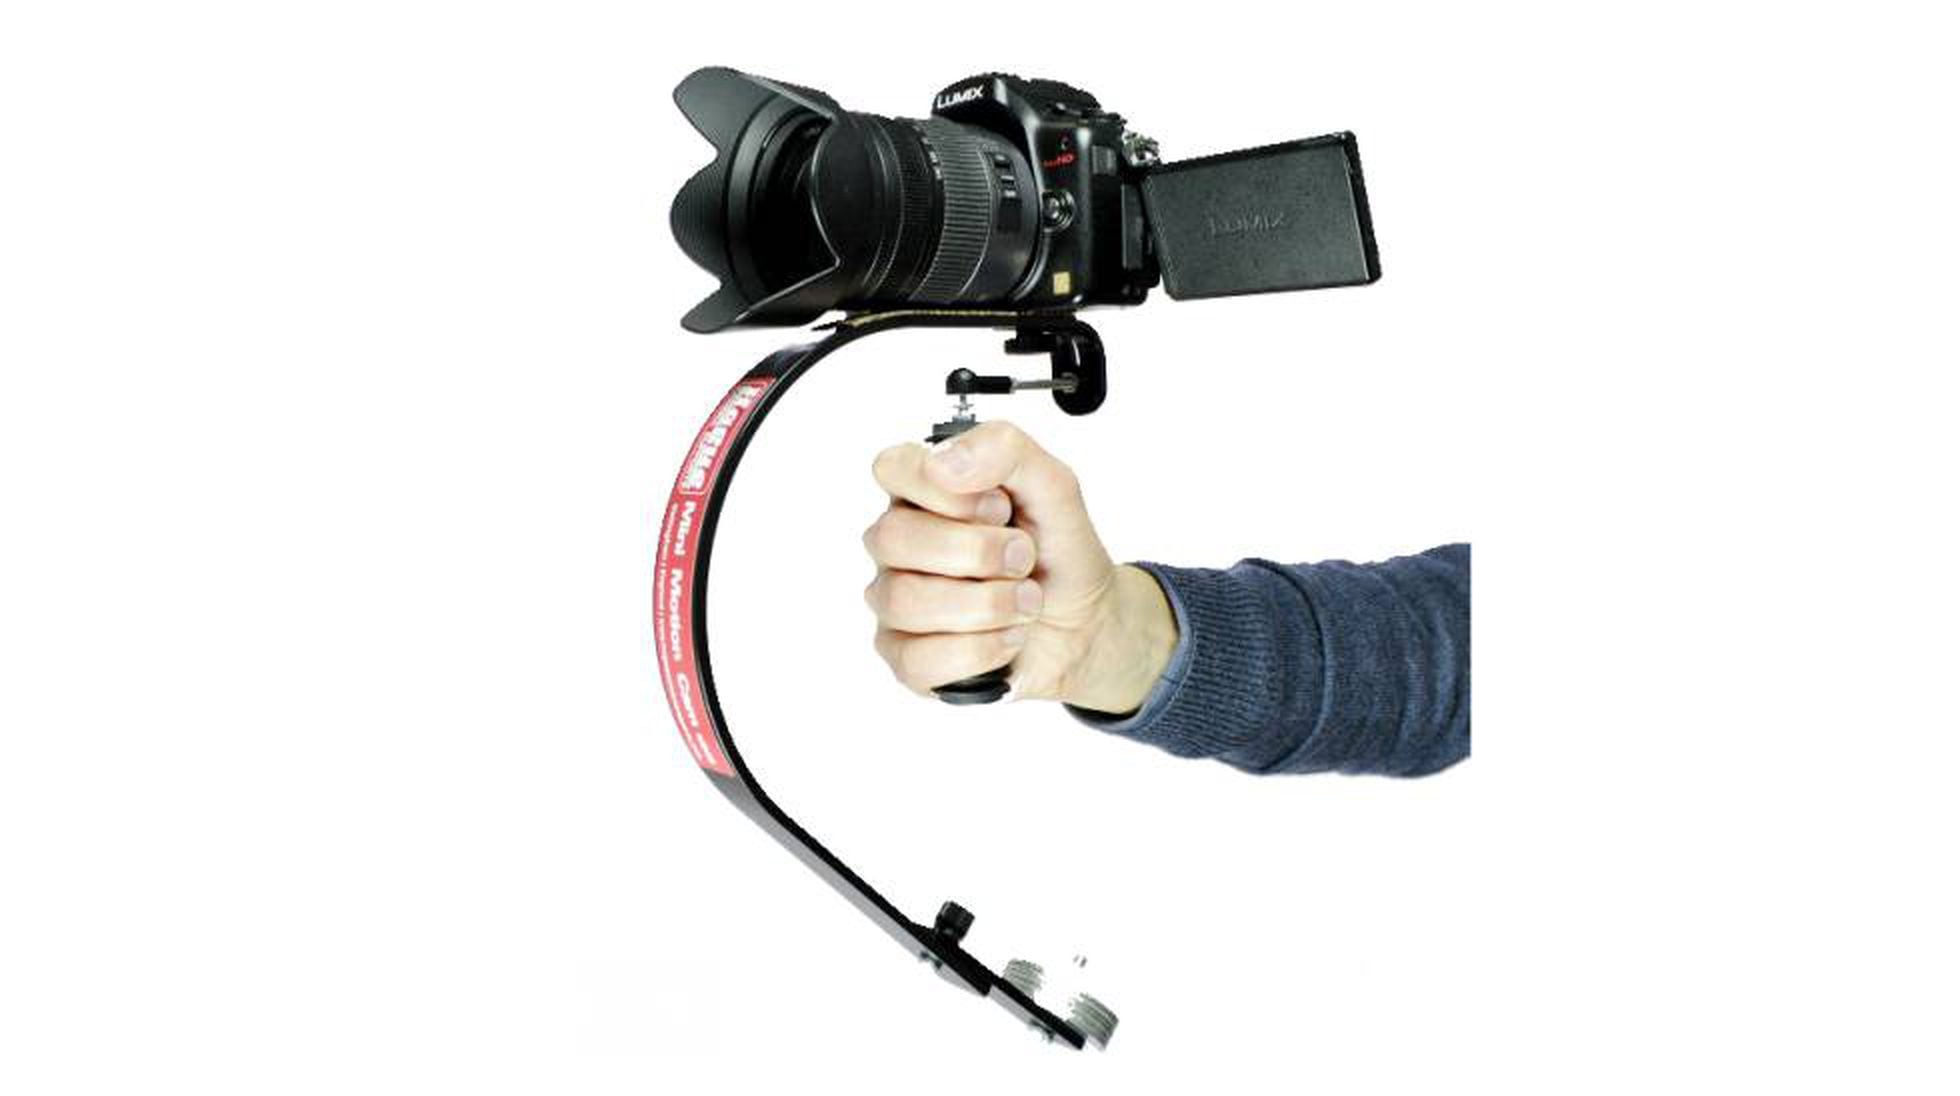 Los mejores accesorios para cámaras reflex - 16nueve